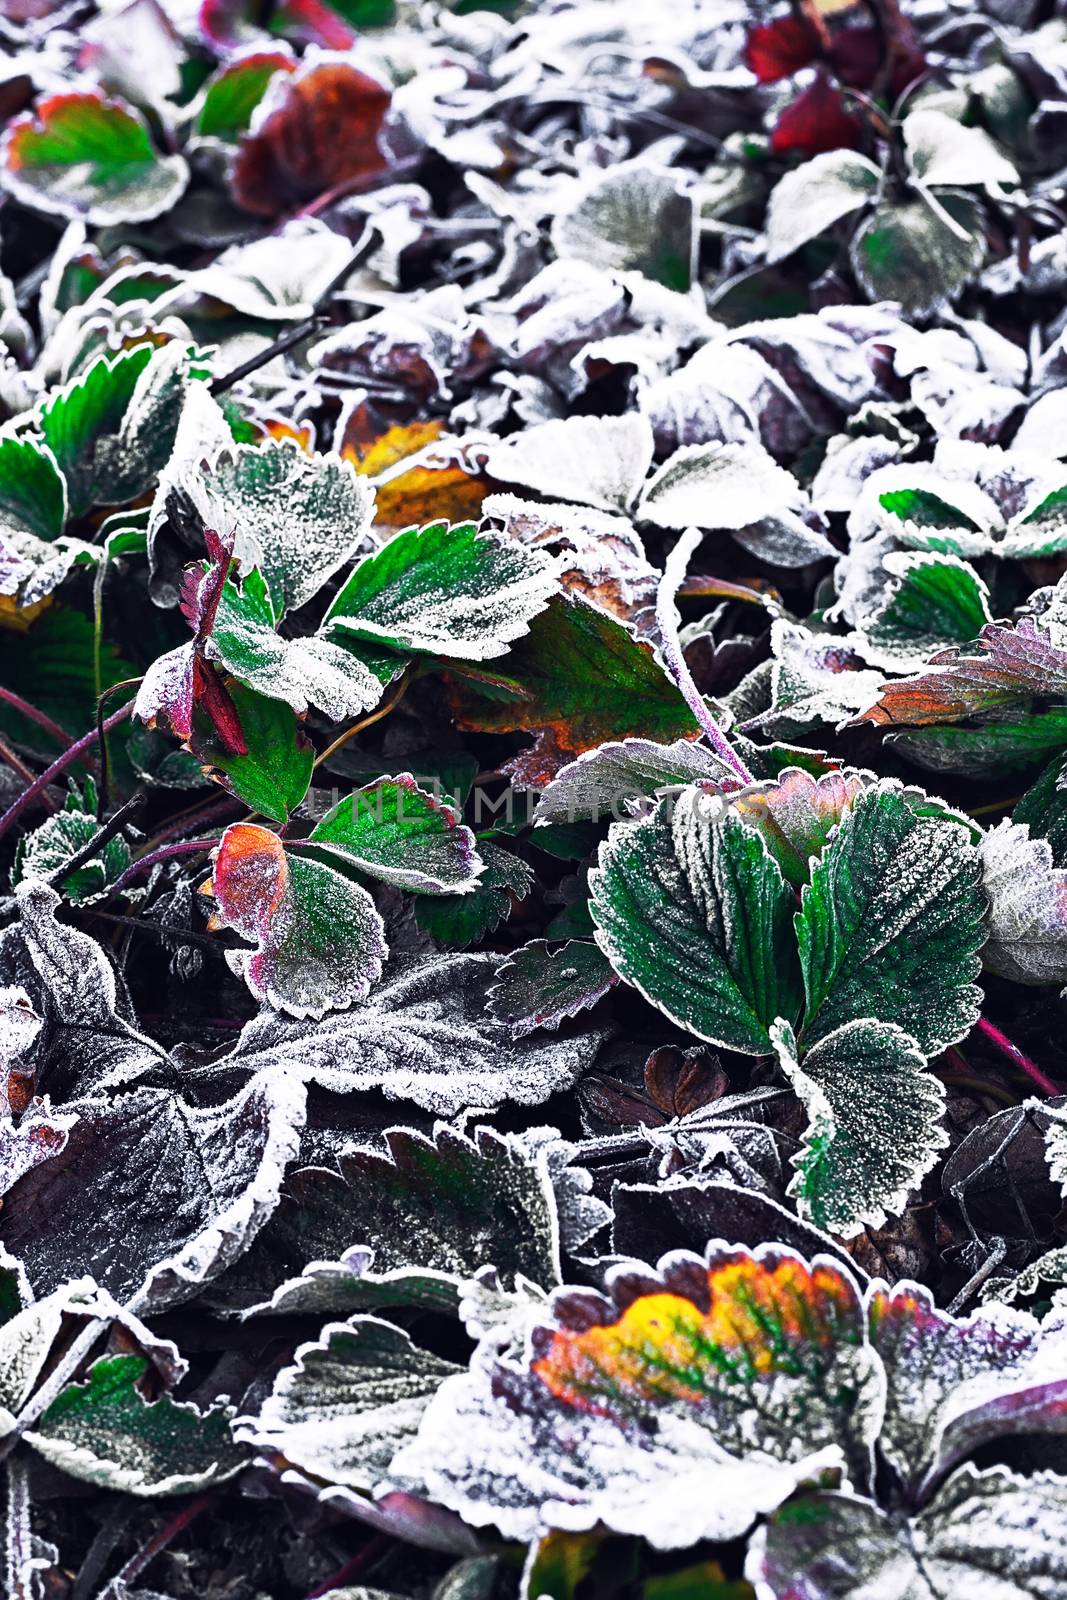 Frozen Bush in the fall by LMykola